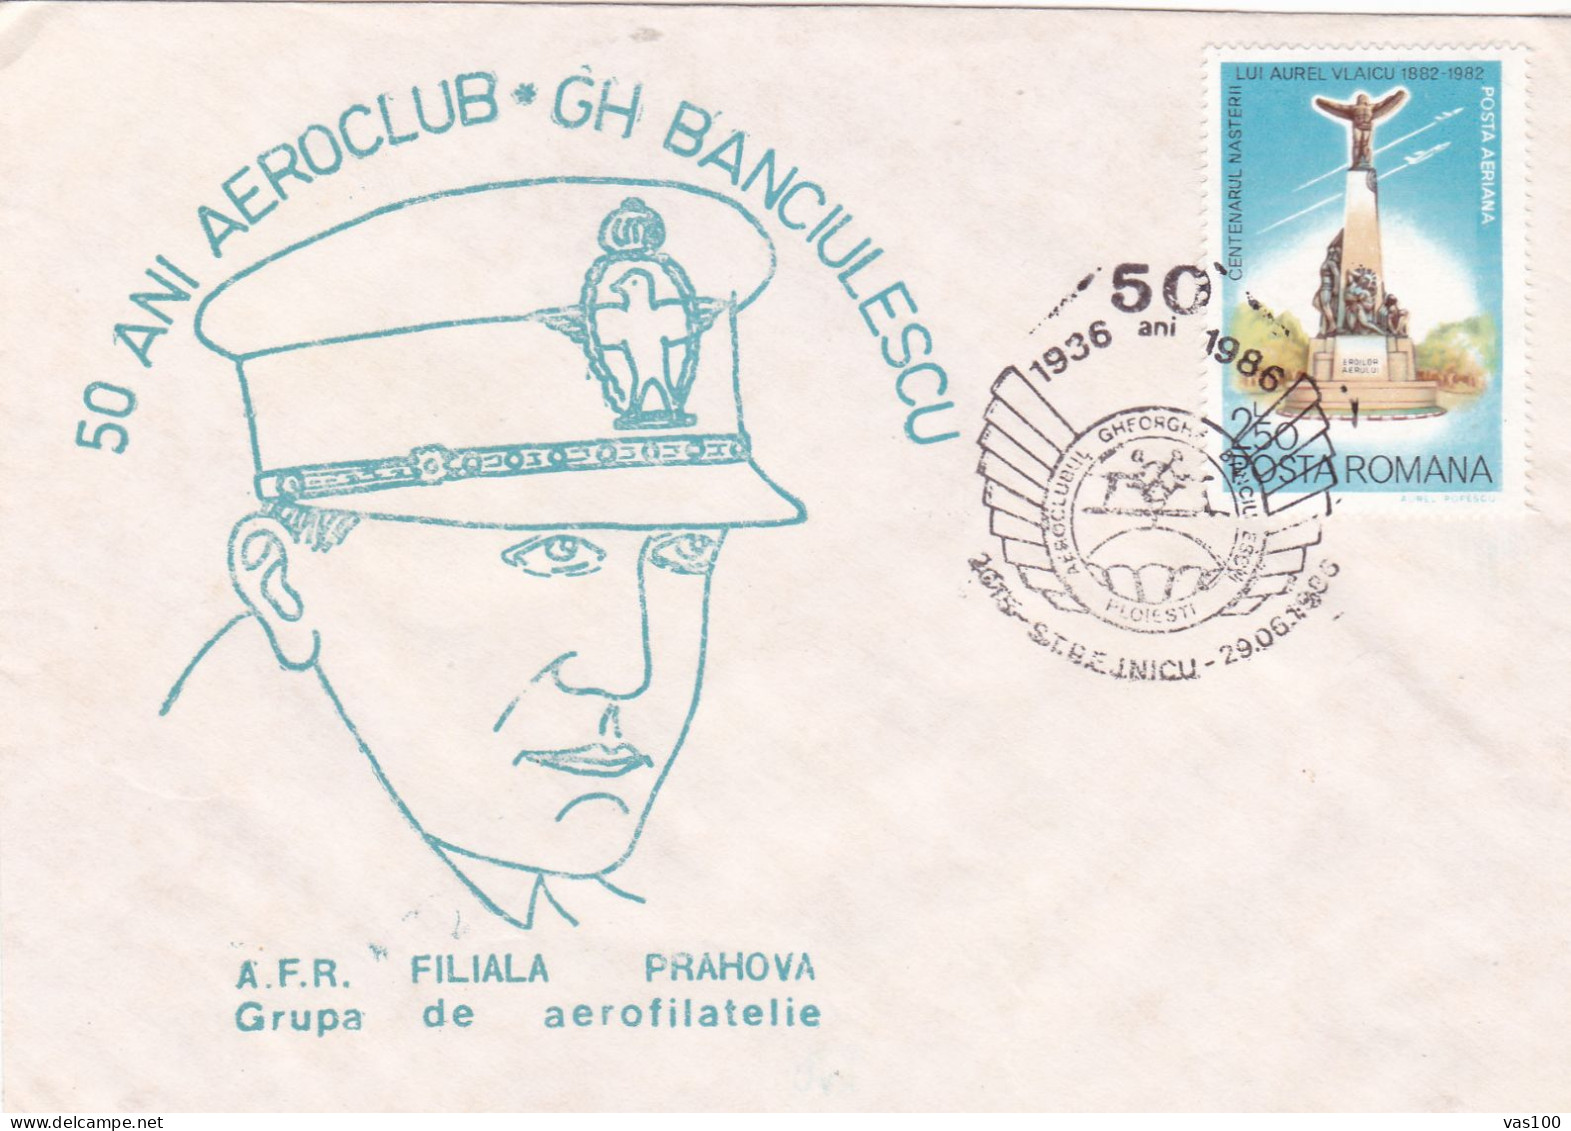 AVIATION CAPTAIN GH BANCIULESCU COVERS   STATIONERY 1986 ROMANIA - Cartas & Documentos